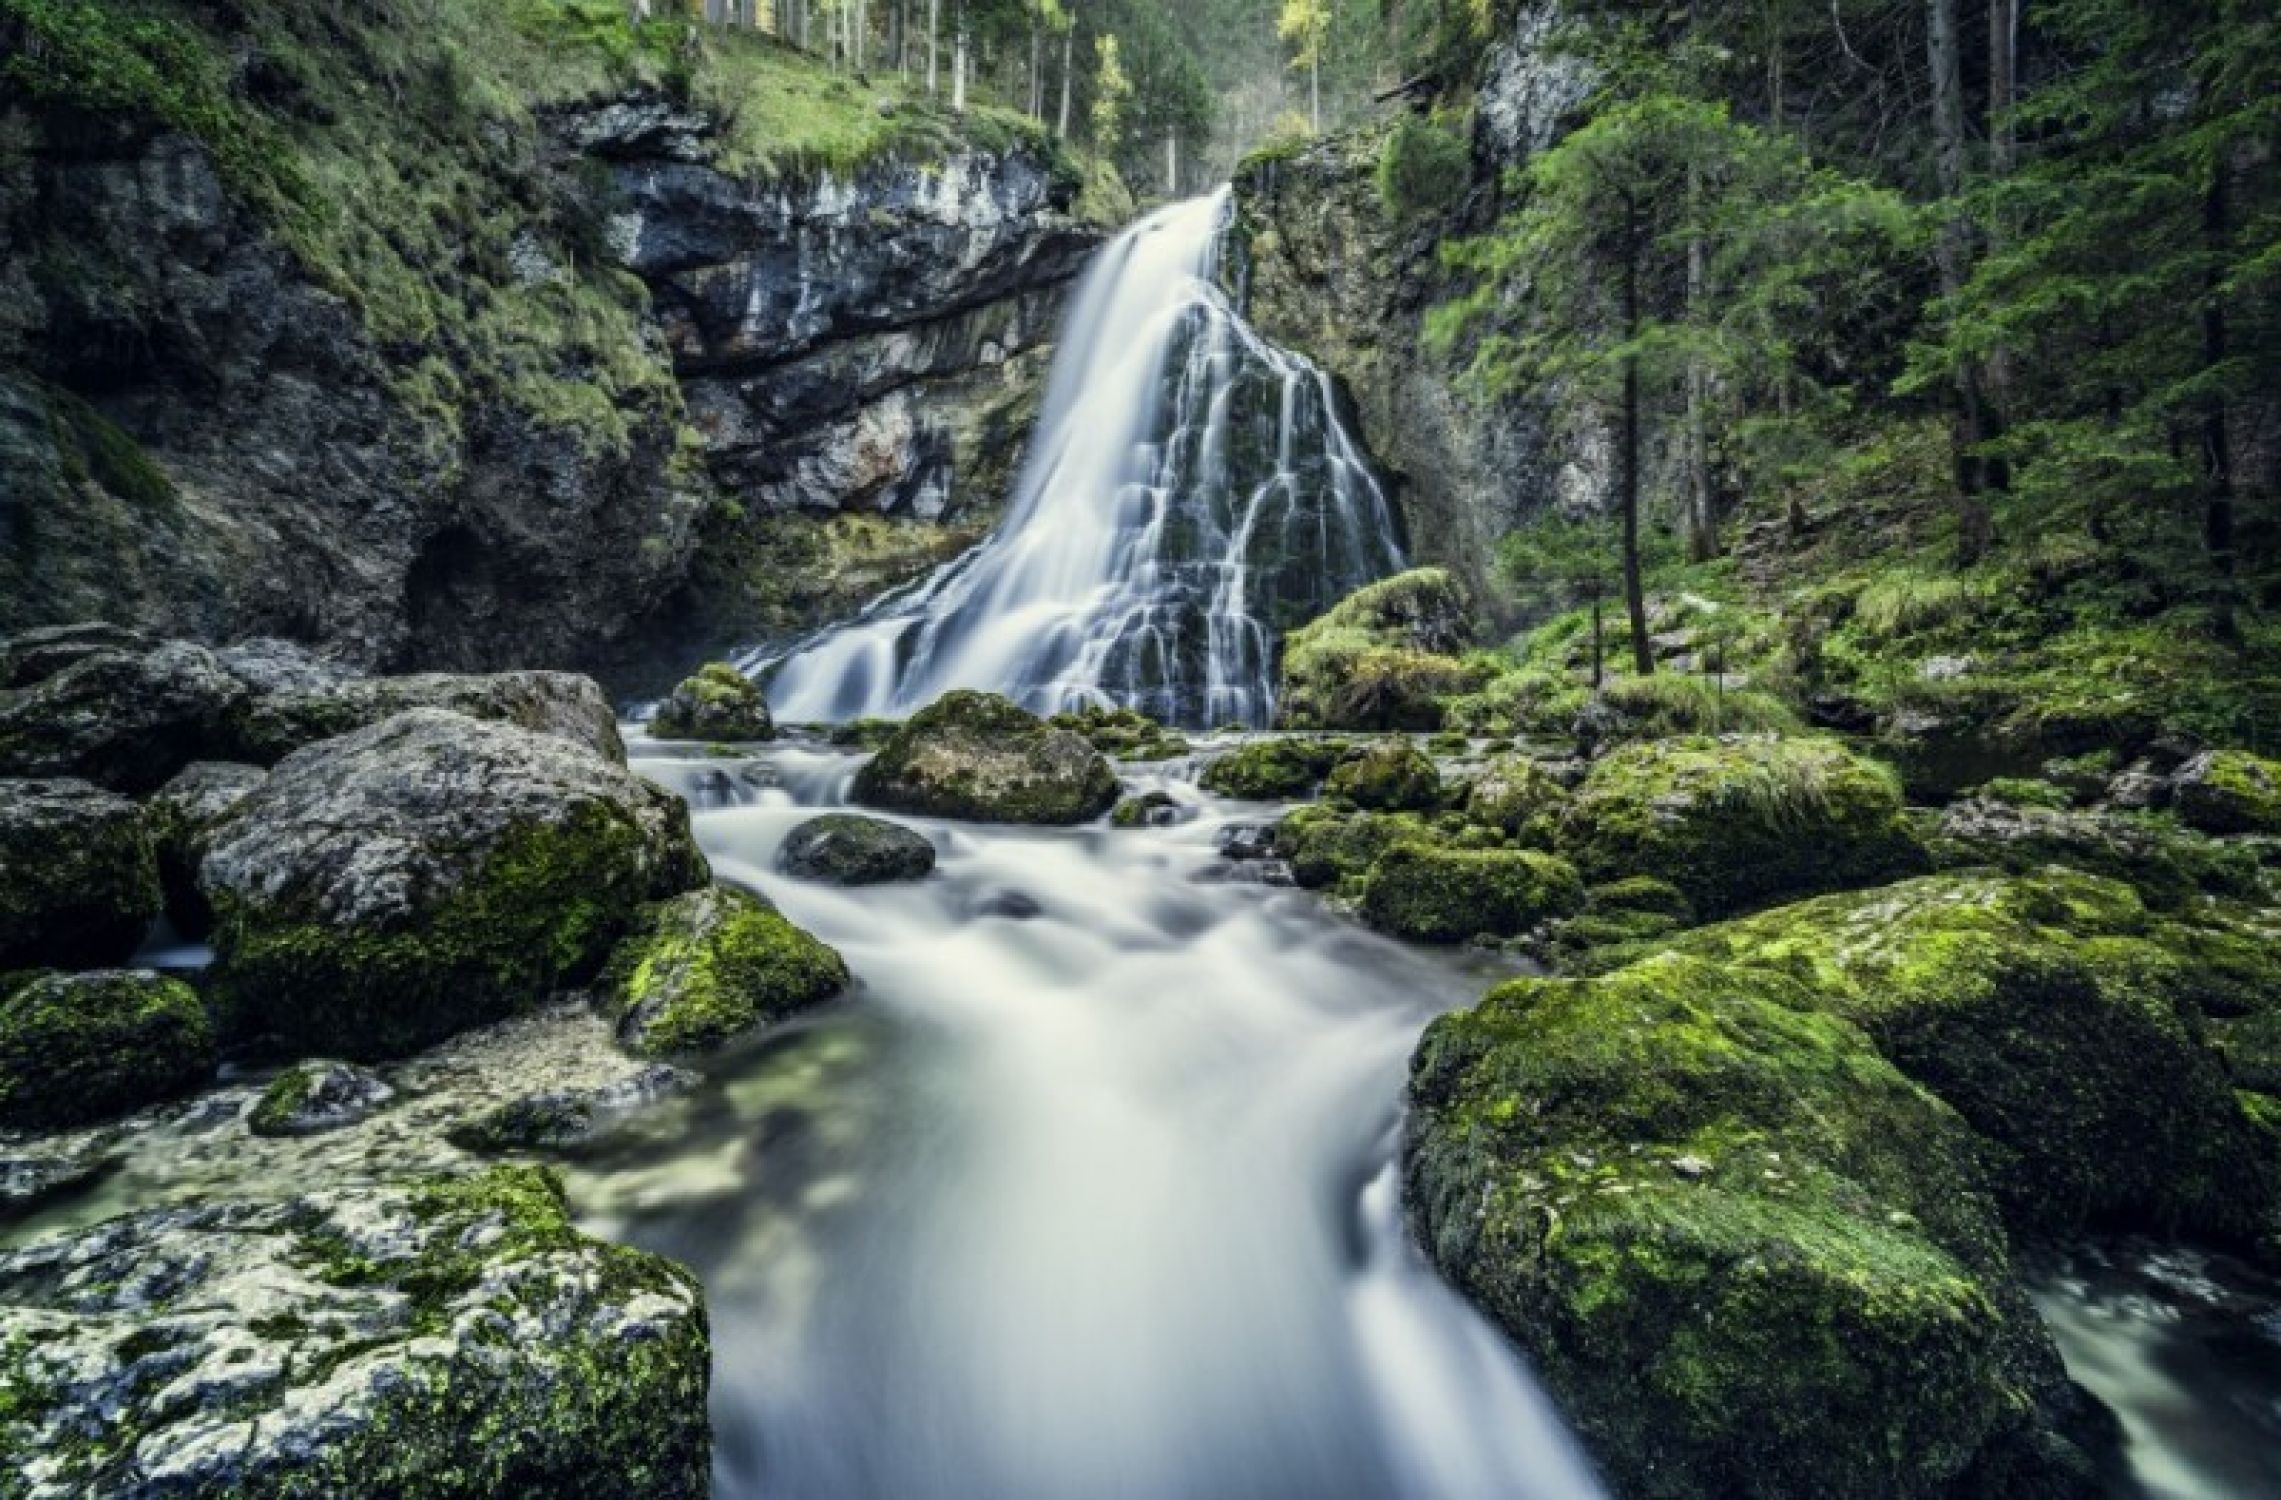 Wandbild "Wald Wasserfall"